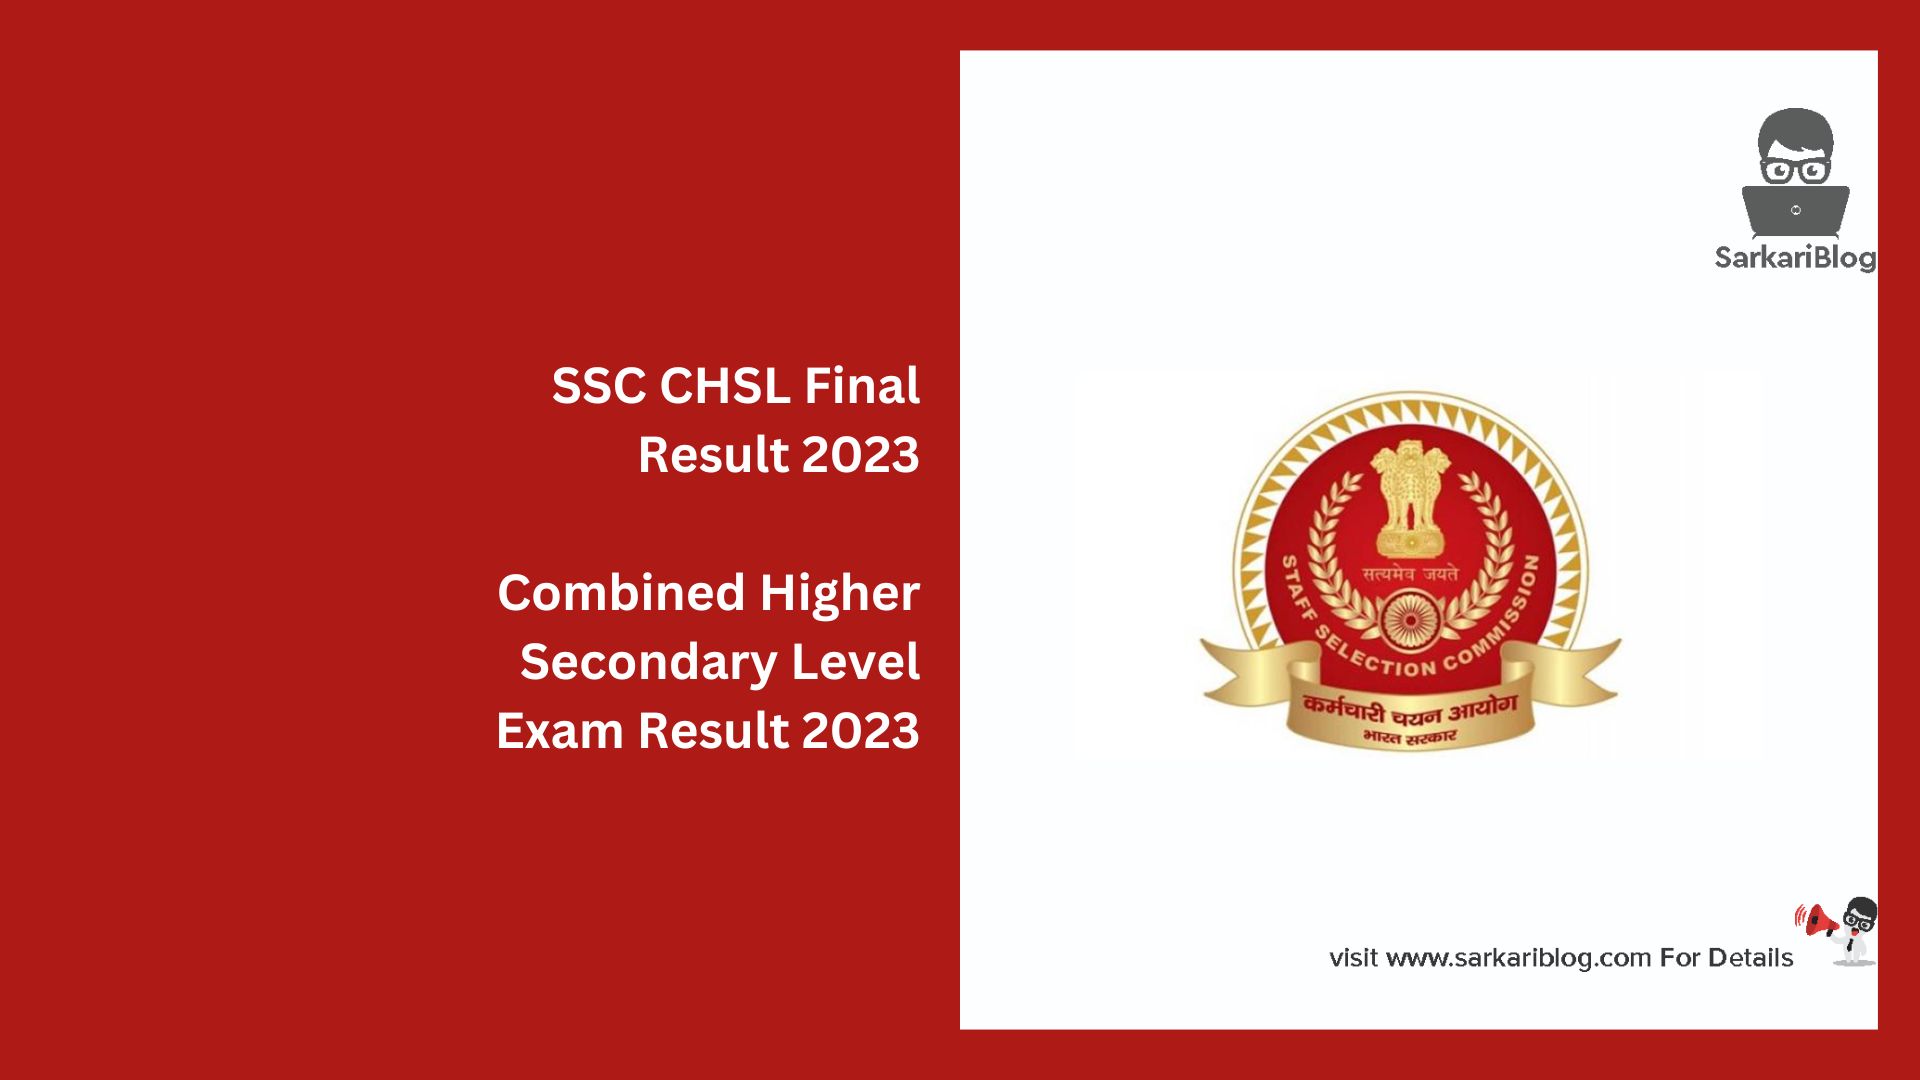 SSC CHSL Final Result 2023